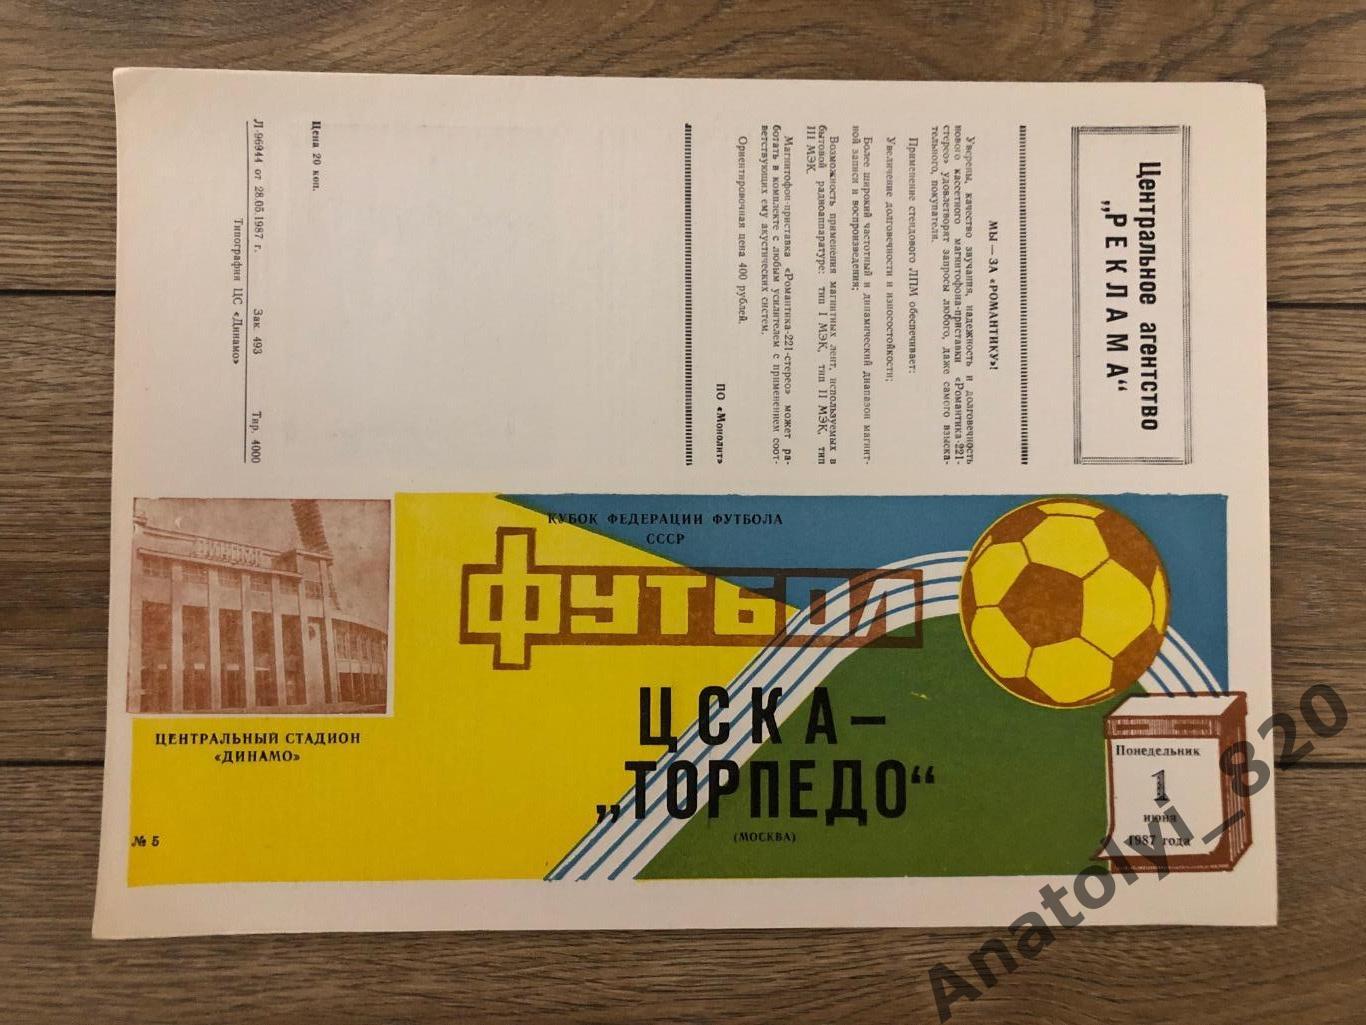 ЦСКА Москва - Торпедо Москва, 01.06.1987